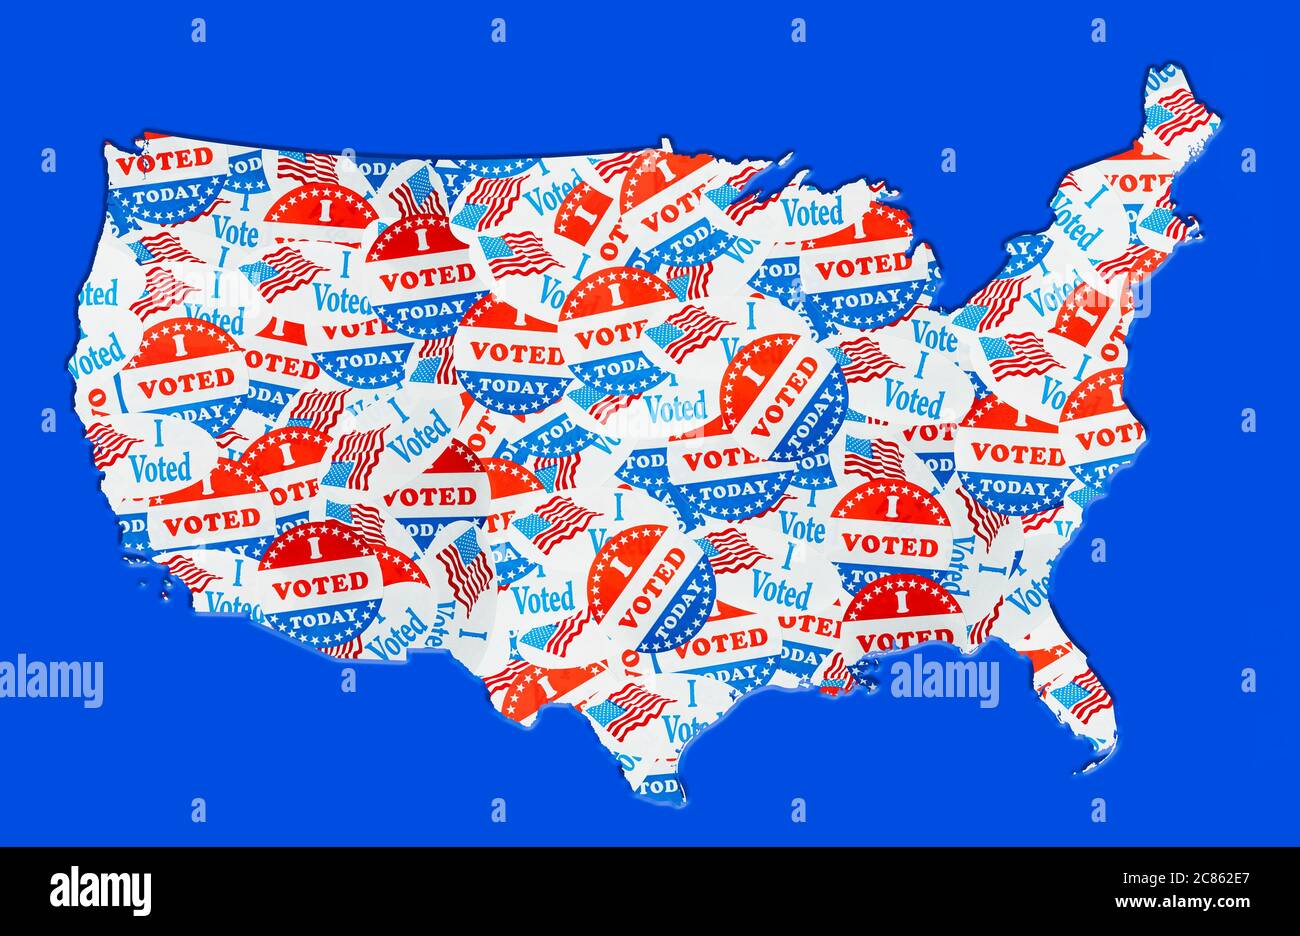 Viele Sticker, die US-Wählern bei den Präsidentschaftswahlen gegeben wurden, bildeten in Form der USA, um die Stimmrechte zu illustrieren Stockfoto